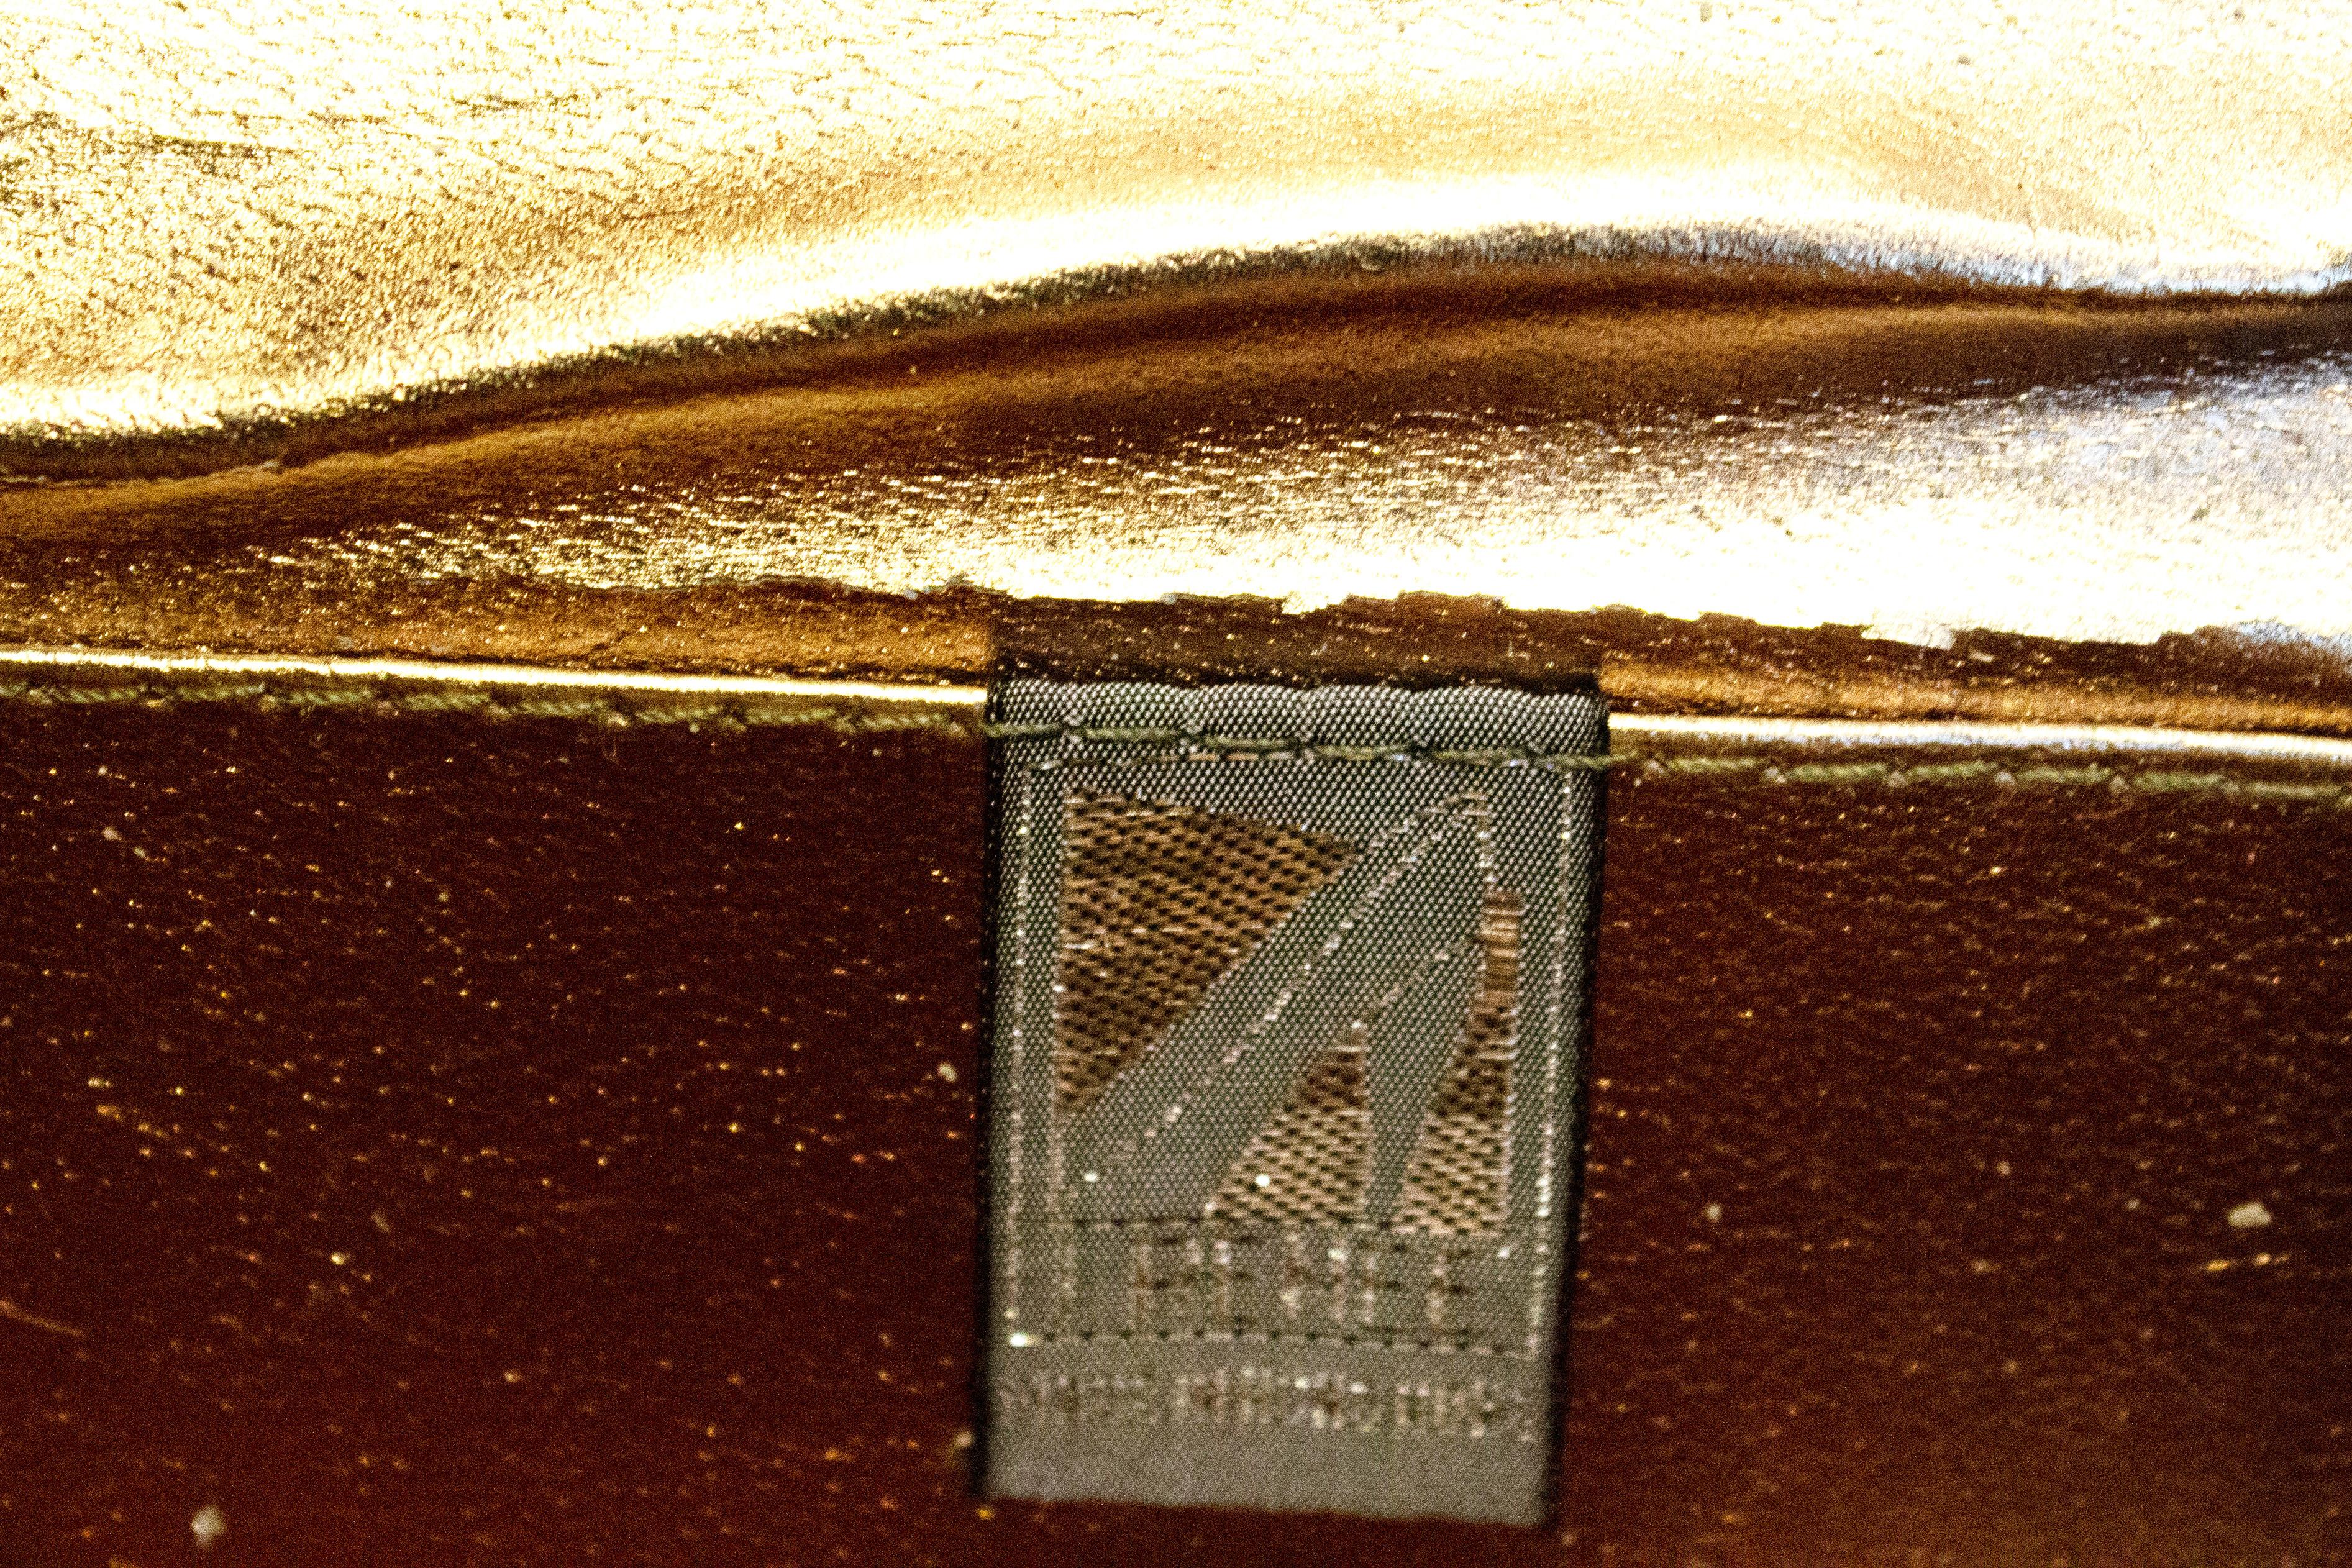 Eine schicke Vintage-Handtasche von J Renee. Die Handtasche in einem sanften Bronzeton hat einen abnehmbaren Riemen und kann so als Clutch oder Handtasche verwendet werden.
Maße: Breite 9'', Höhe 5'', Tiefe 2''